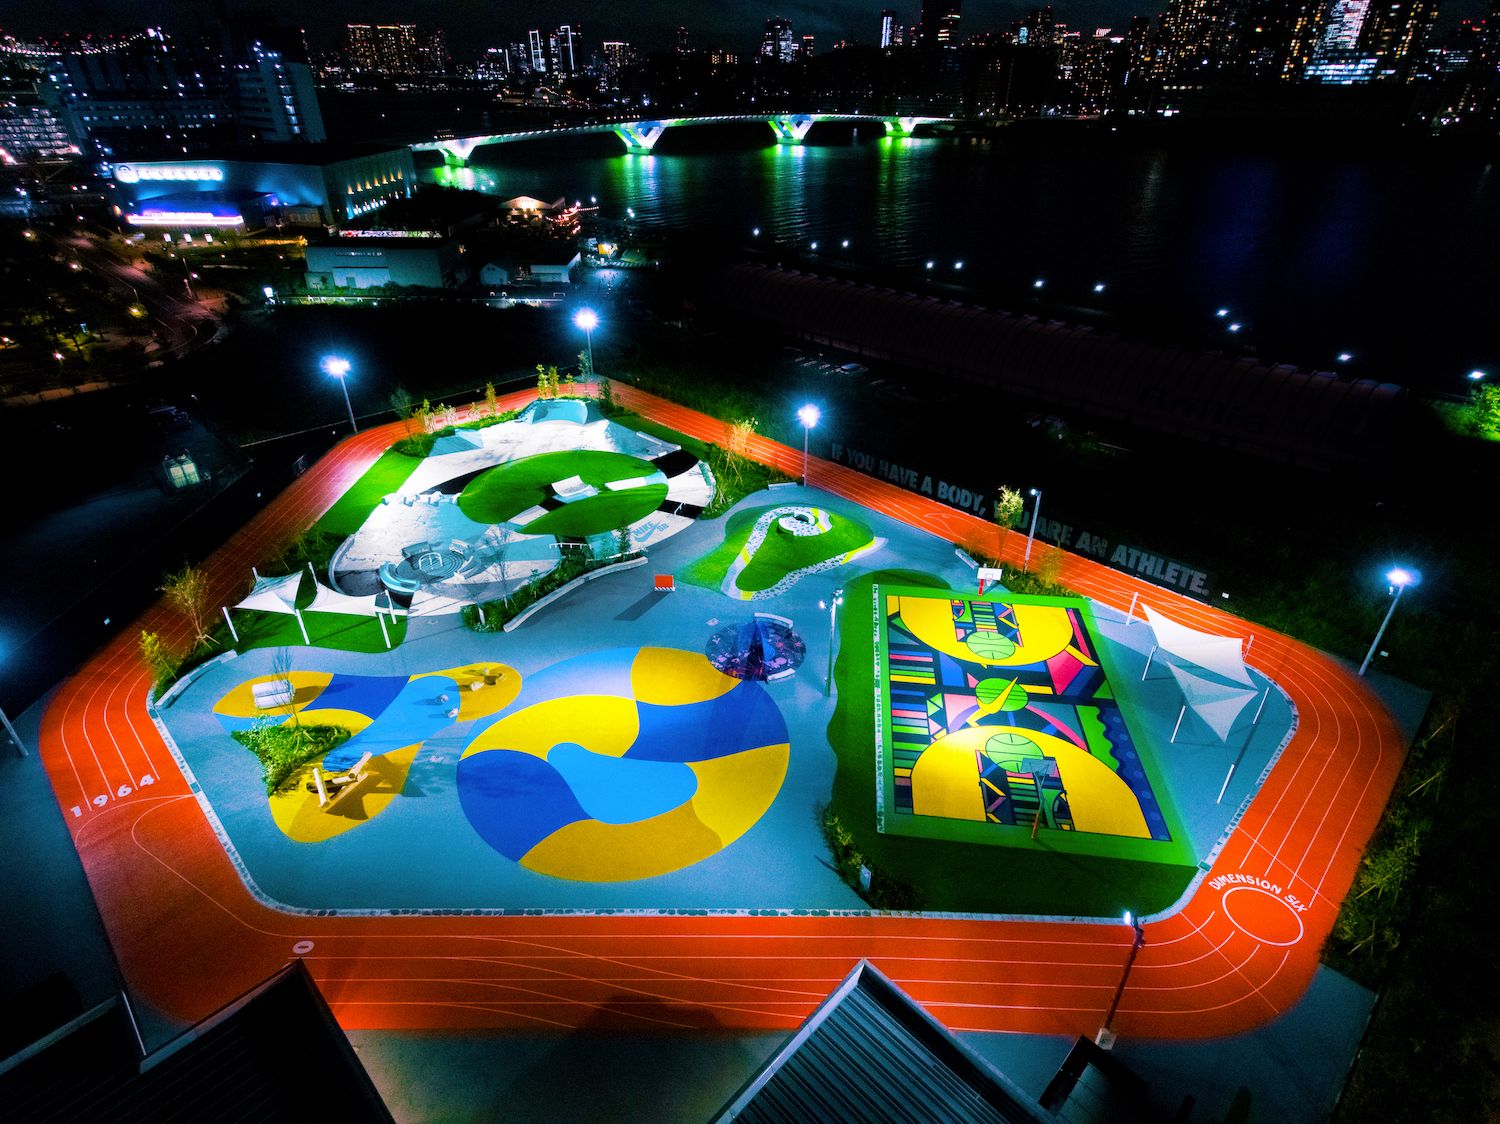 競技場と公園の融合 いまだかつてない新たなスポーツアミューズメントパークが東京に誕生